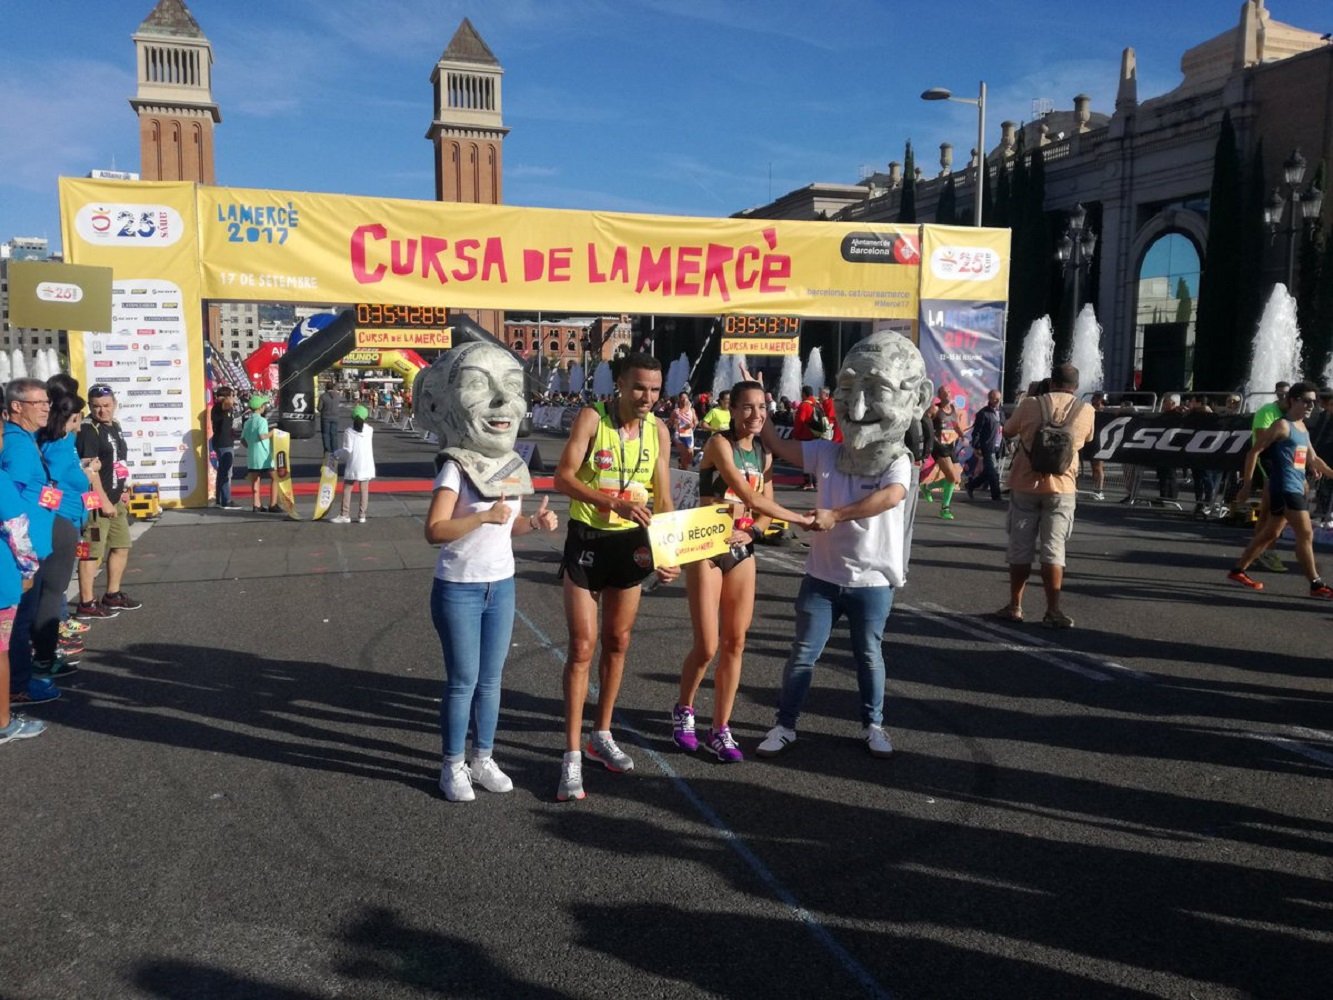 Barcelona celebrarà la Cursa de la Mercè sense reduir corredors